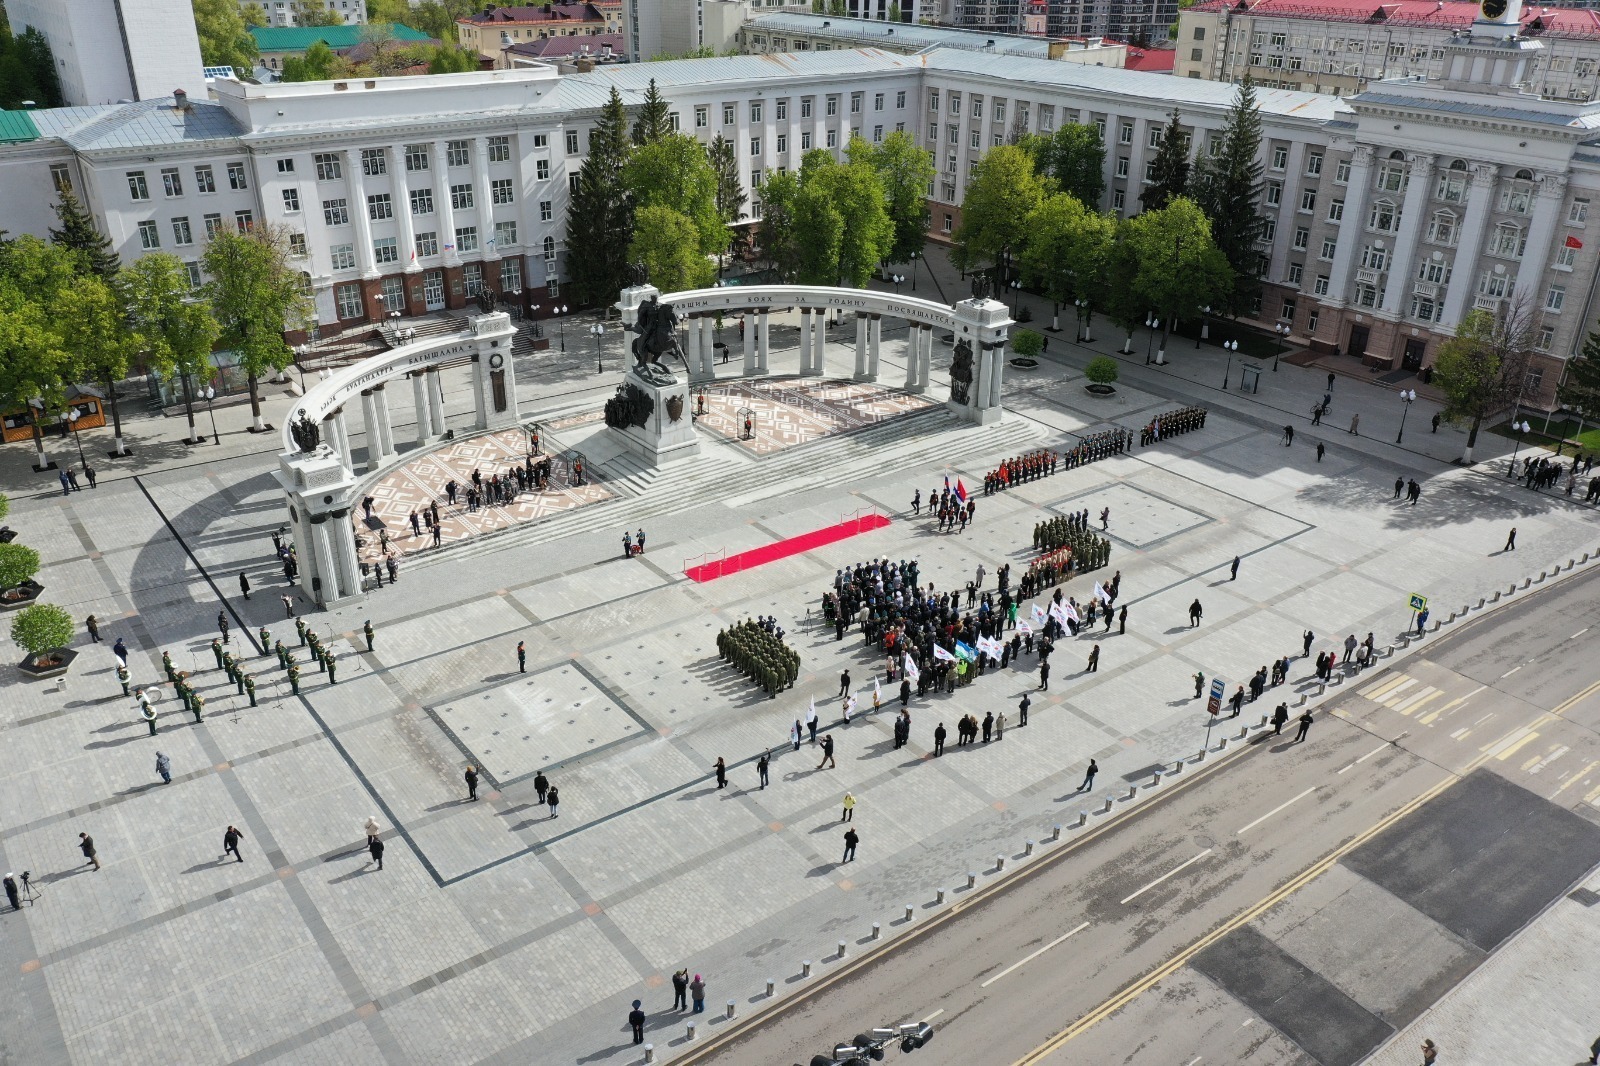 Глава Башкирии в День Победы возложил цветы к памятнику генералу Шаймуратову